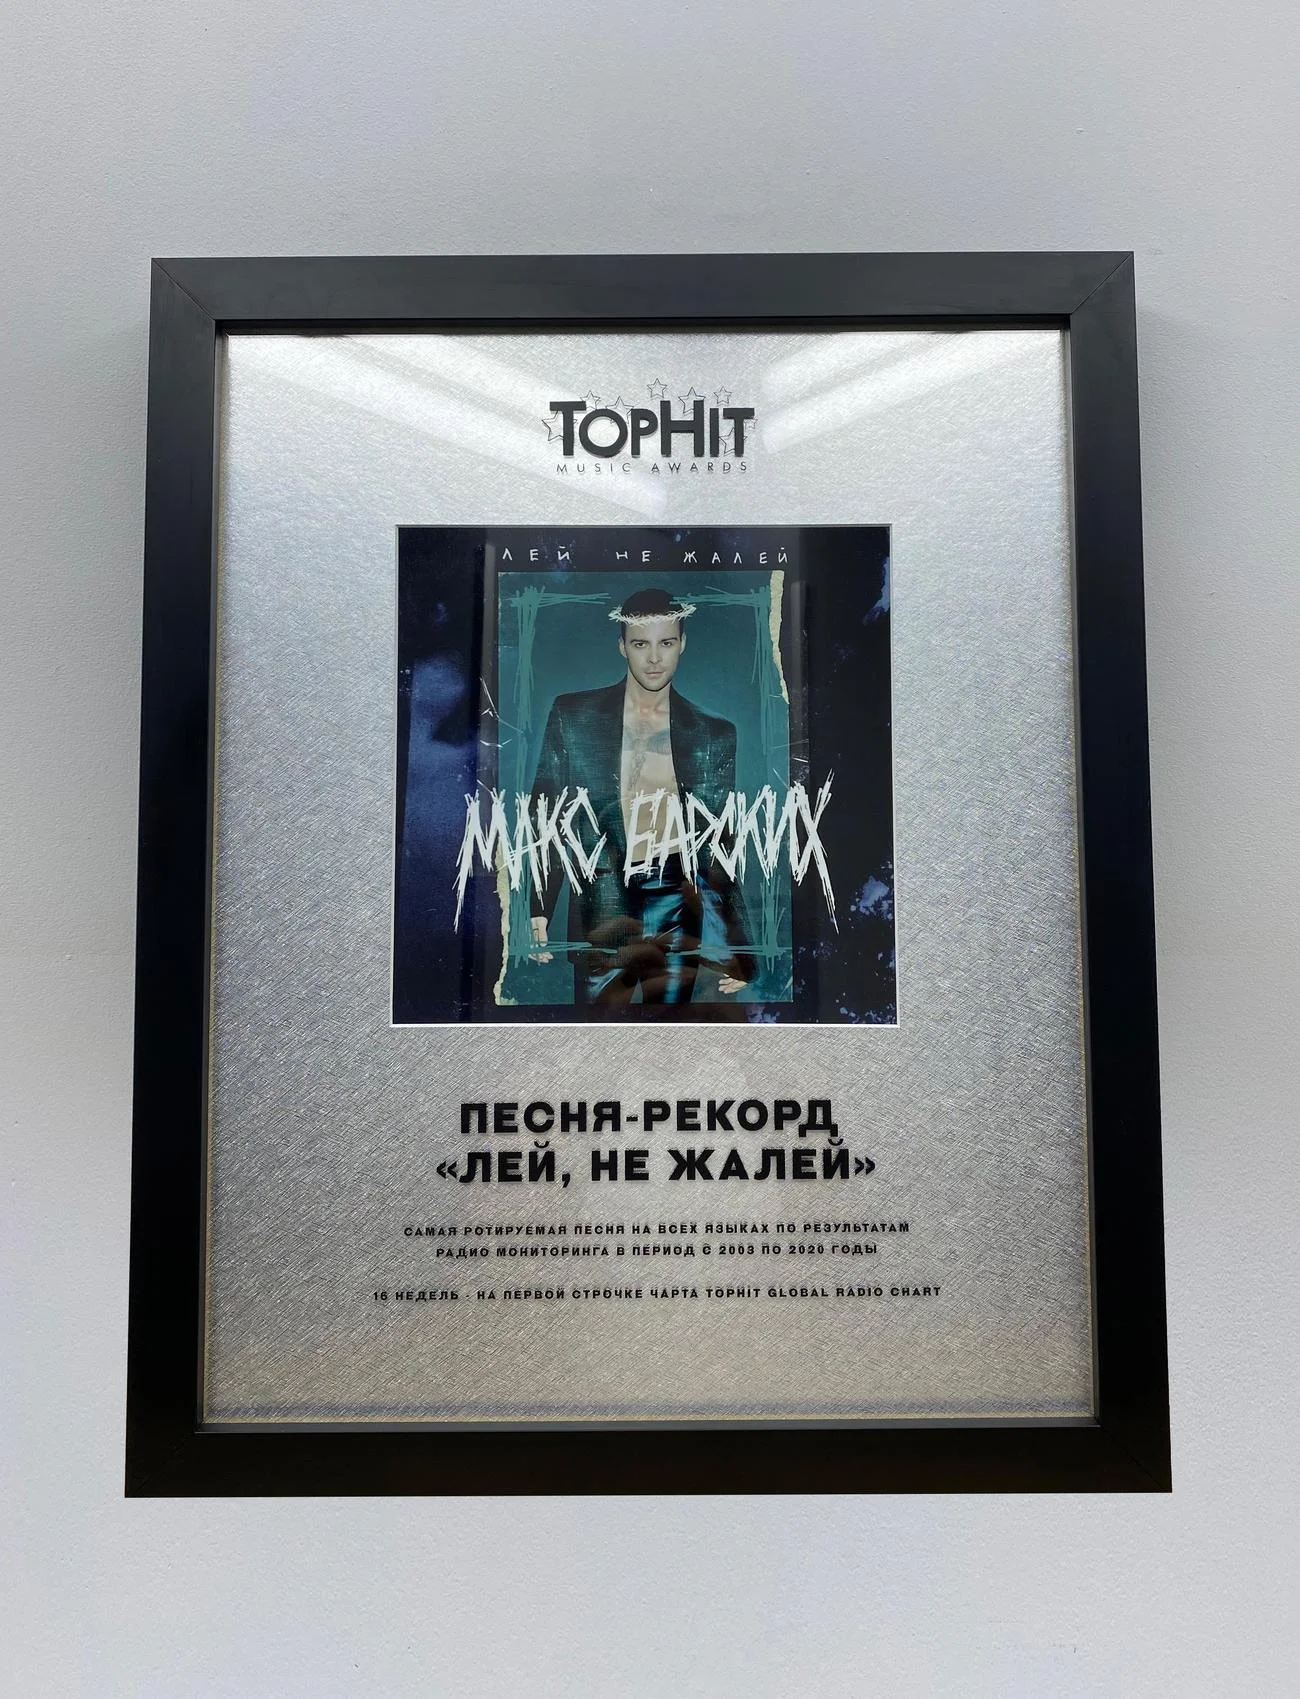 Обошел Билли Айлиш: Макс Барских получил уникальную награду TOPHIT MUSIC AWARDS - фото 483622